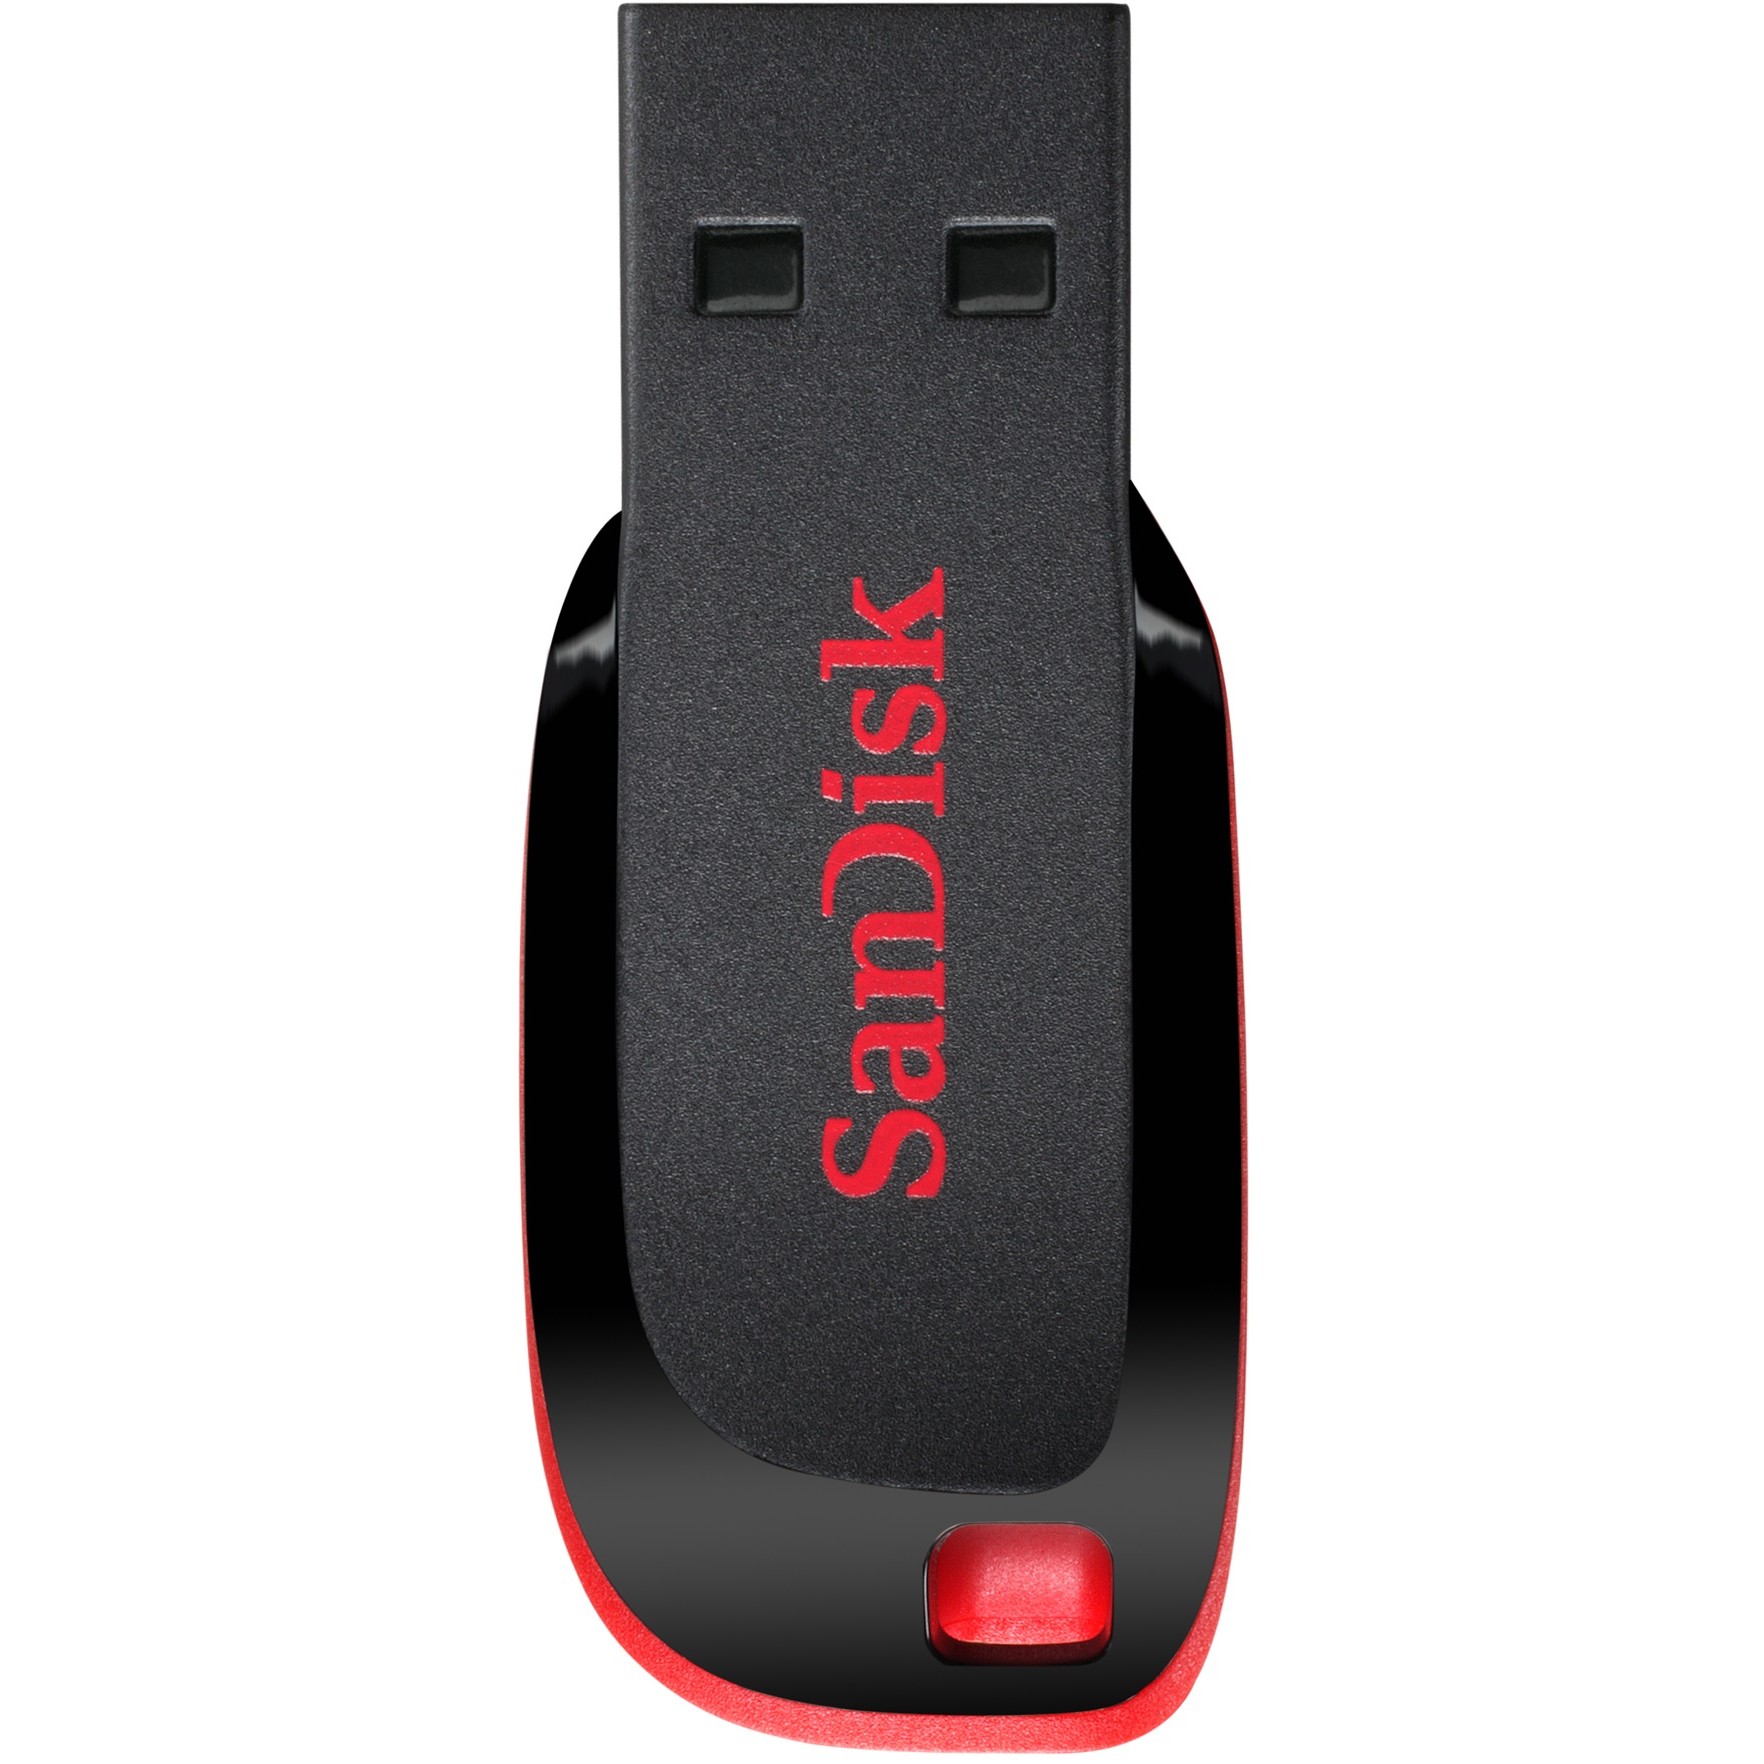 Sandisk SDCZ50-032G-B35, USB-Stick, SanDisk Cruzer Blade  (BILD1)